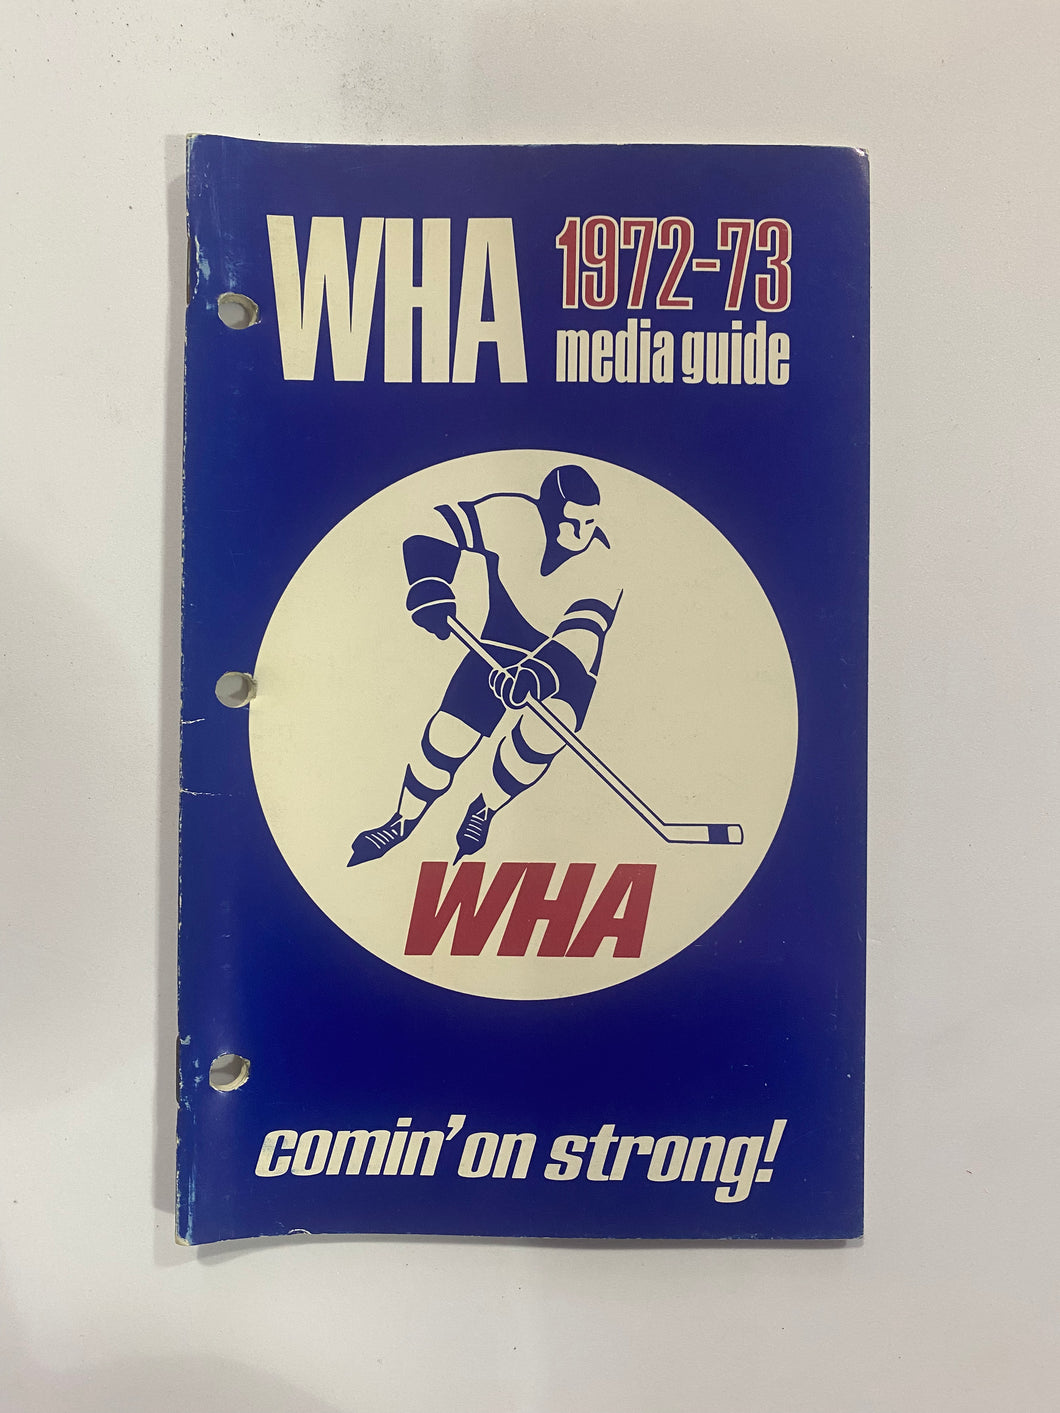 1972-73 World Hockey Association Media Guide